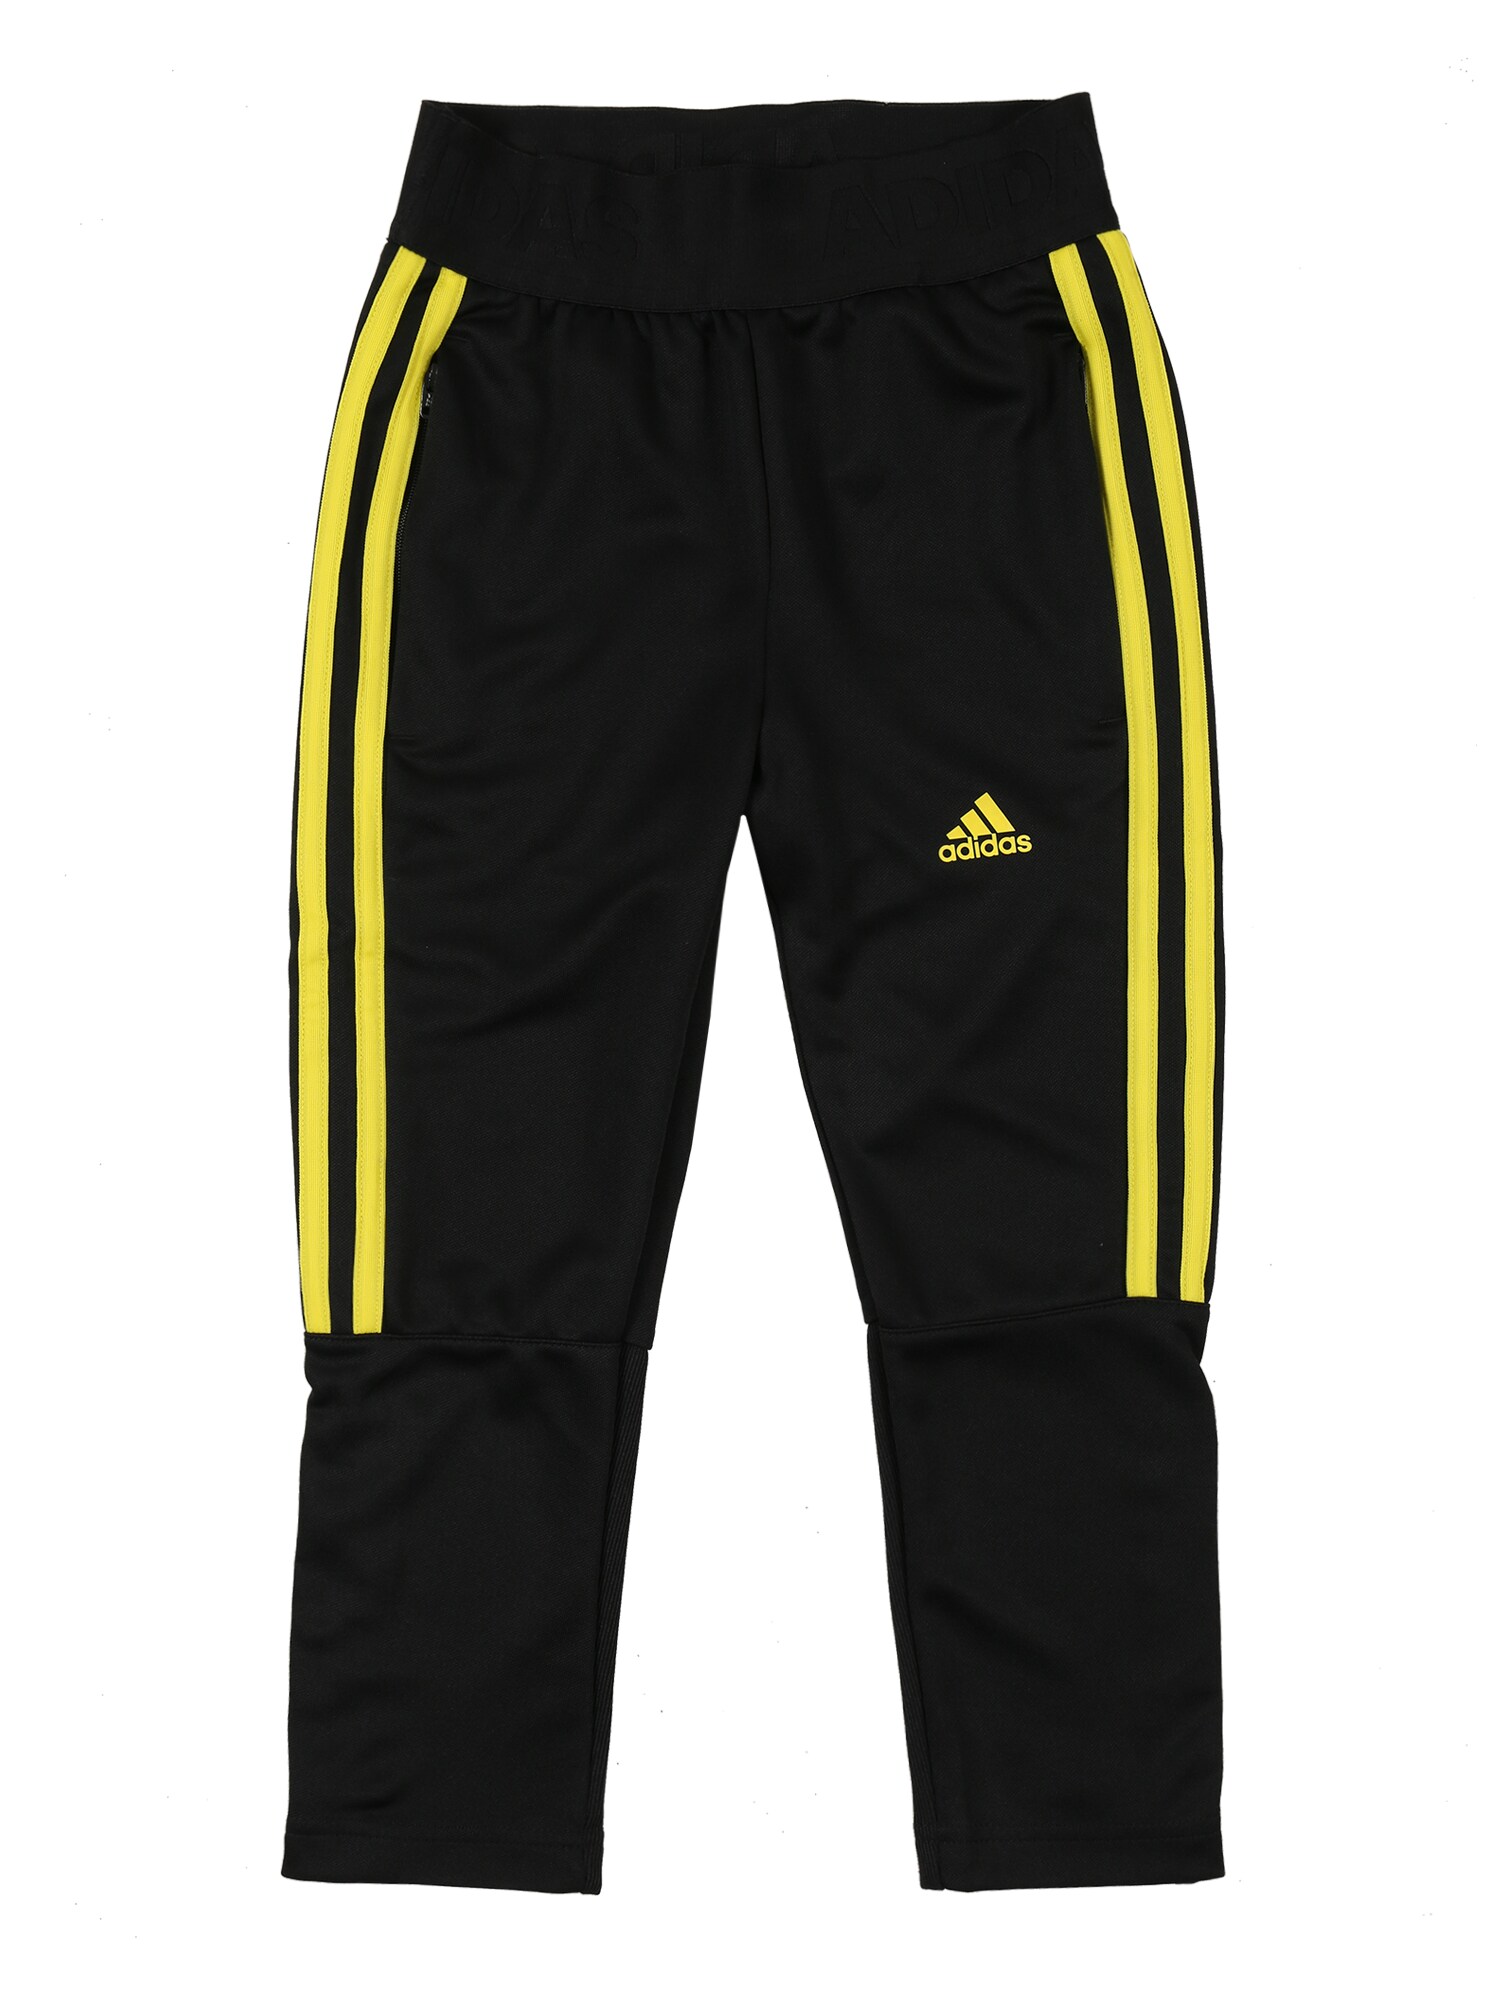 ADIDAS PERFORMANCE Sportinės kelnės 'TIRO'  juoda / geltona